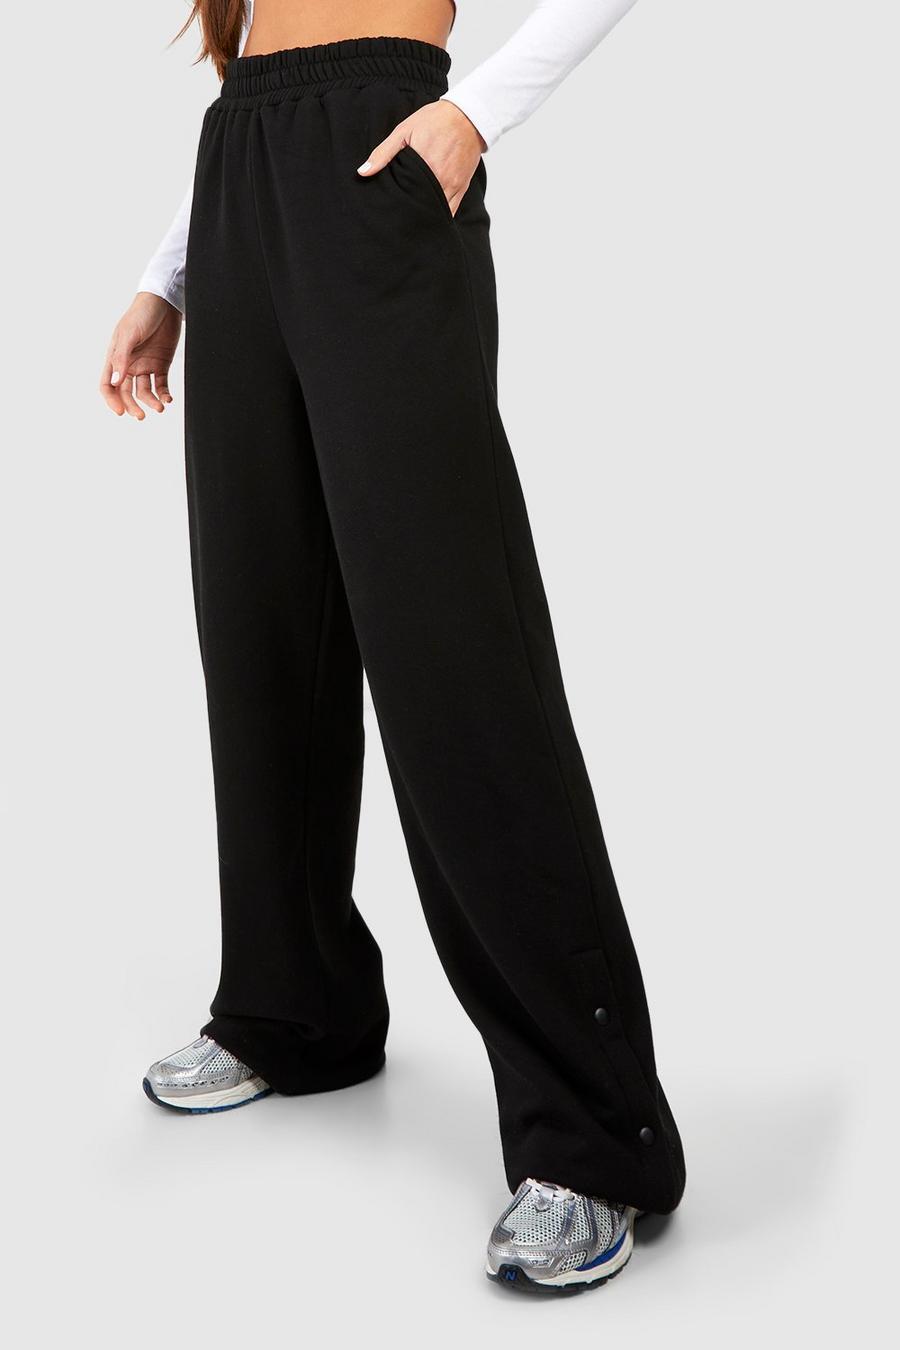 czarne spodnie dresowe joggery rozpinane nogawki 